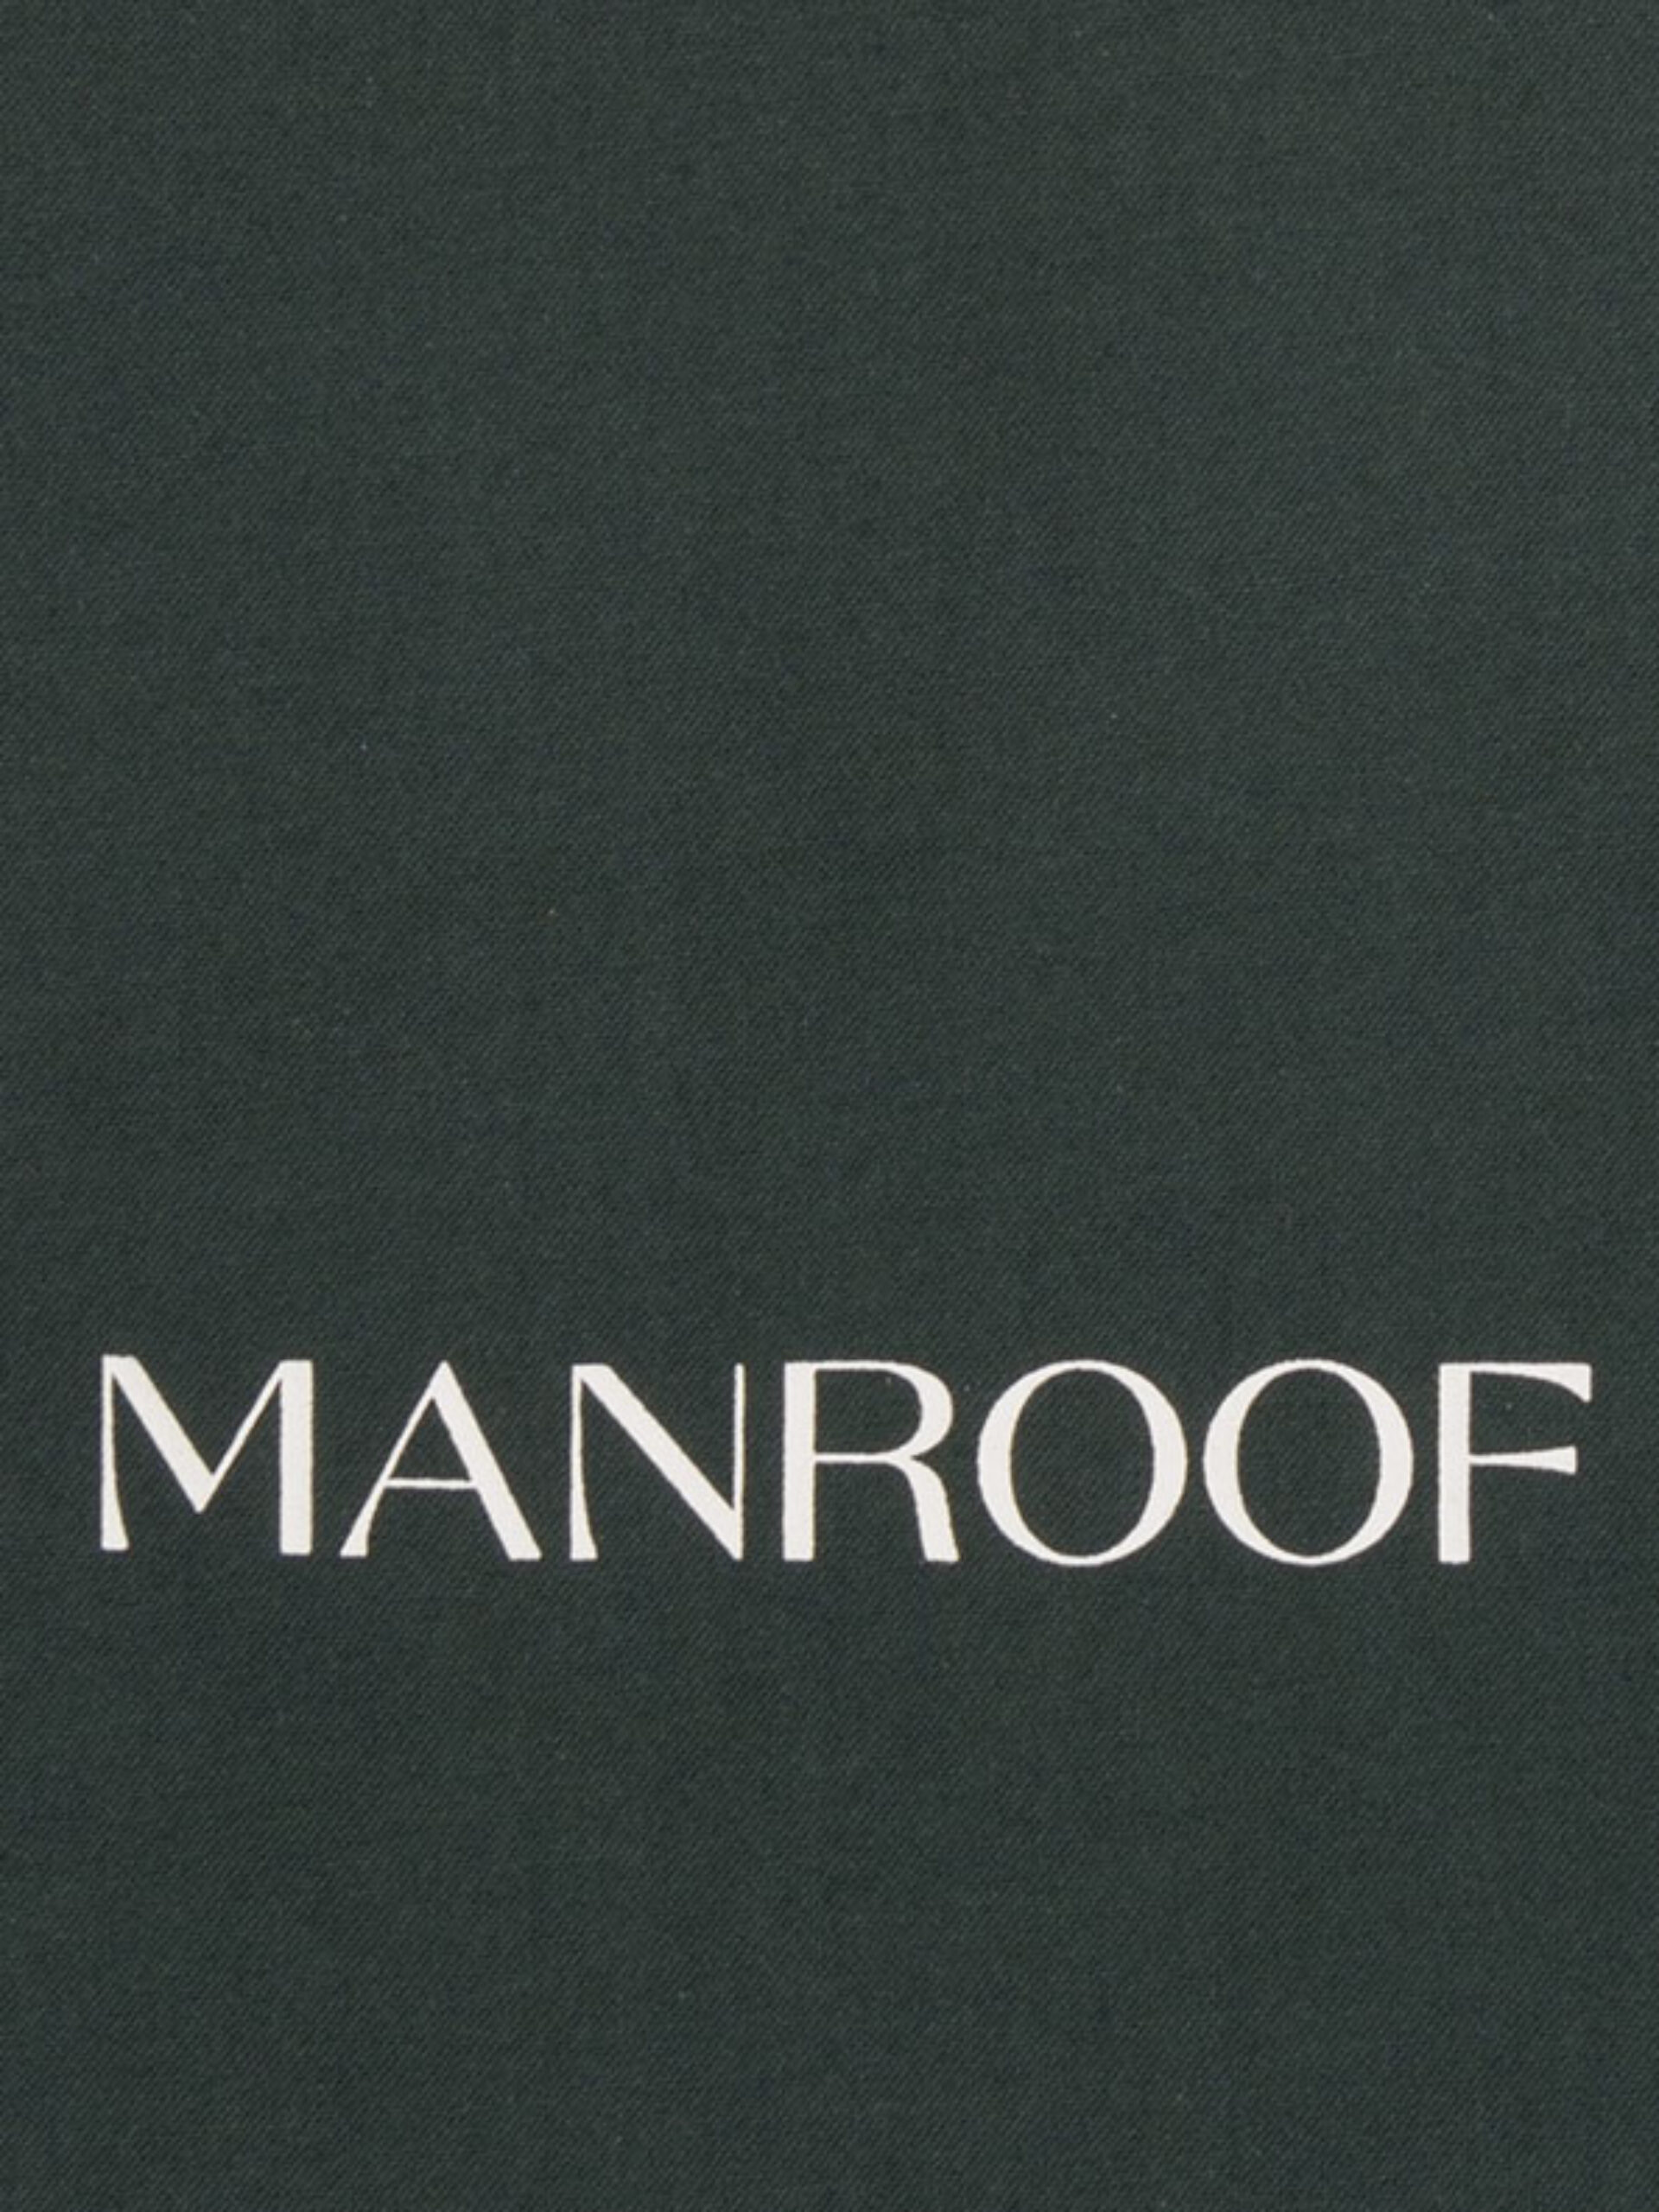 Kordelbeutel Manroof Mit Logo Bedrucken Baumwolle Werbegeschenk Give Away